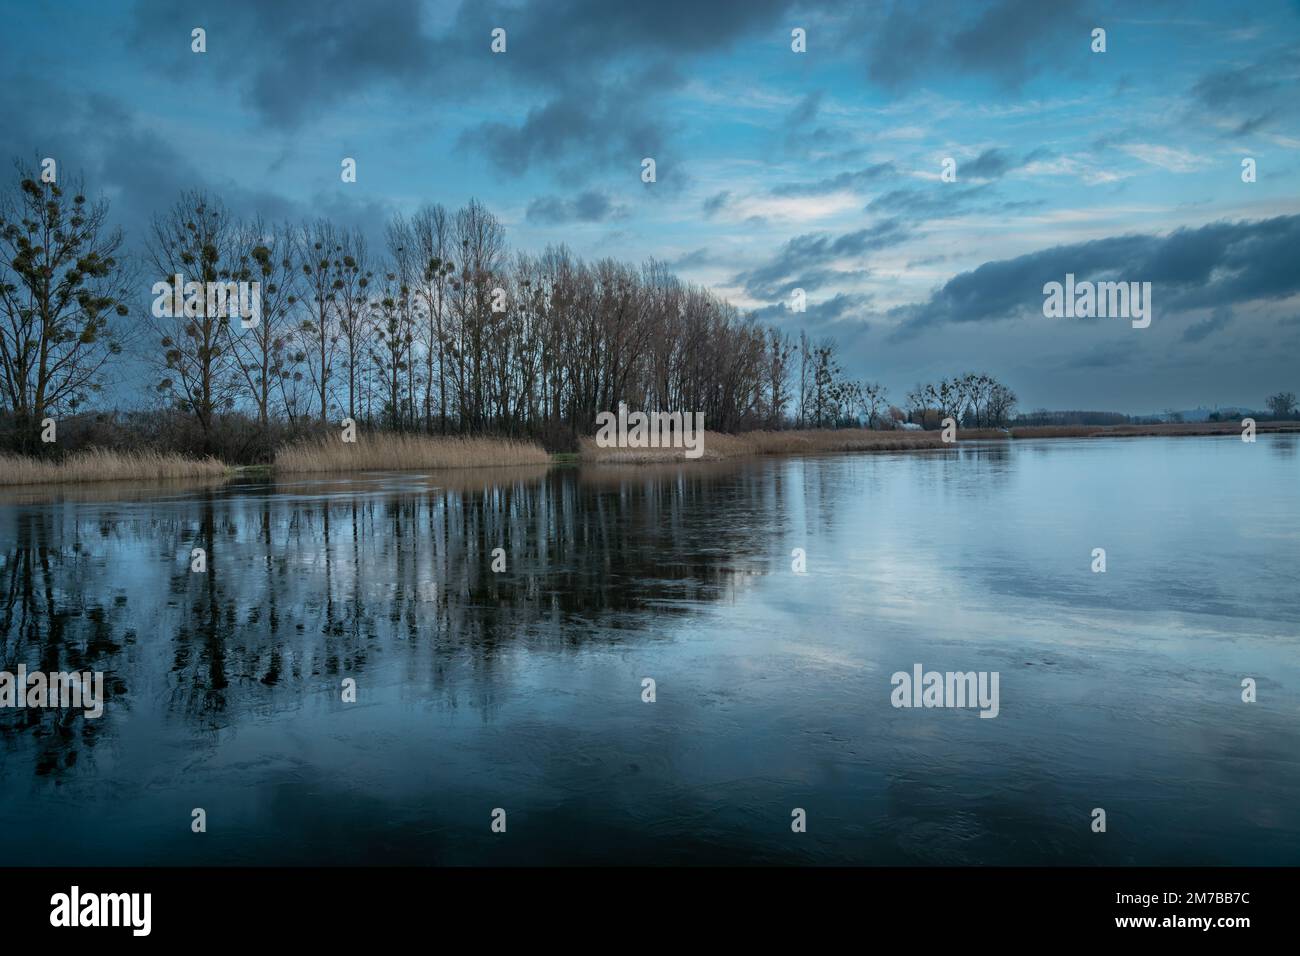 Bewölkter, regnerischer Abendhimmel und Bäume, die sich in einem gefrorenen See in Stankow, Polen spiegeln Stockfoto